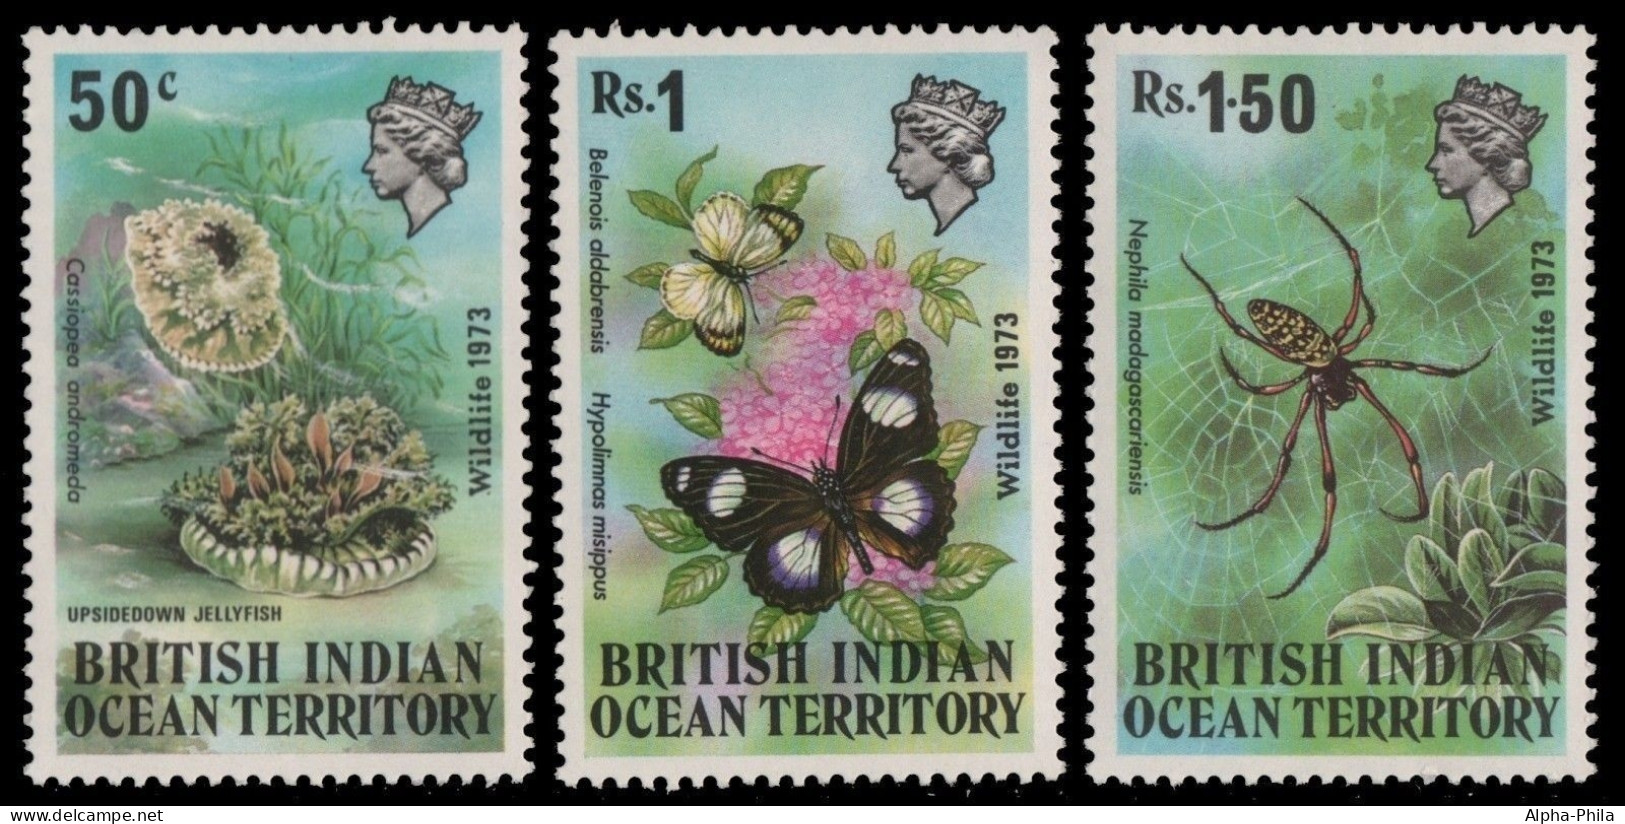 BIOT 1973 - Mi-Nr. 54-56 ** - MNH - Fauna - British Indian Ocean Territory (BIOT)